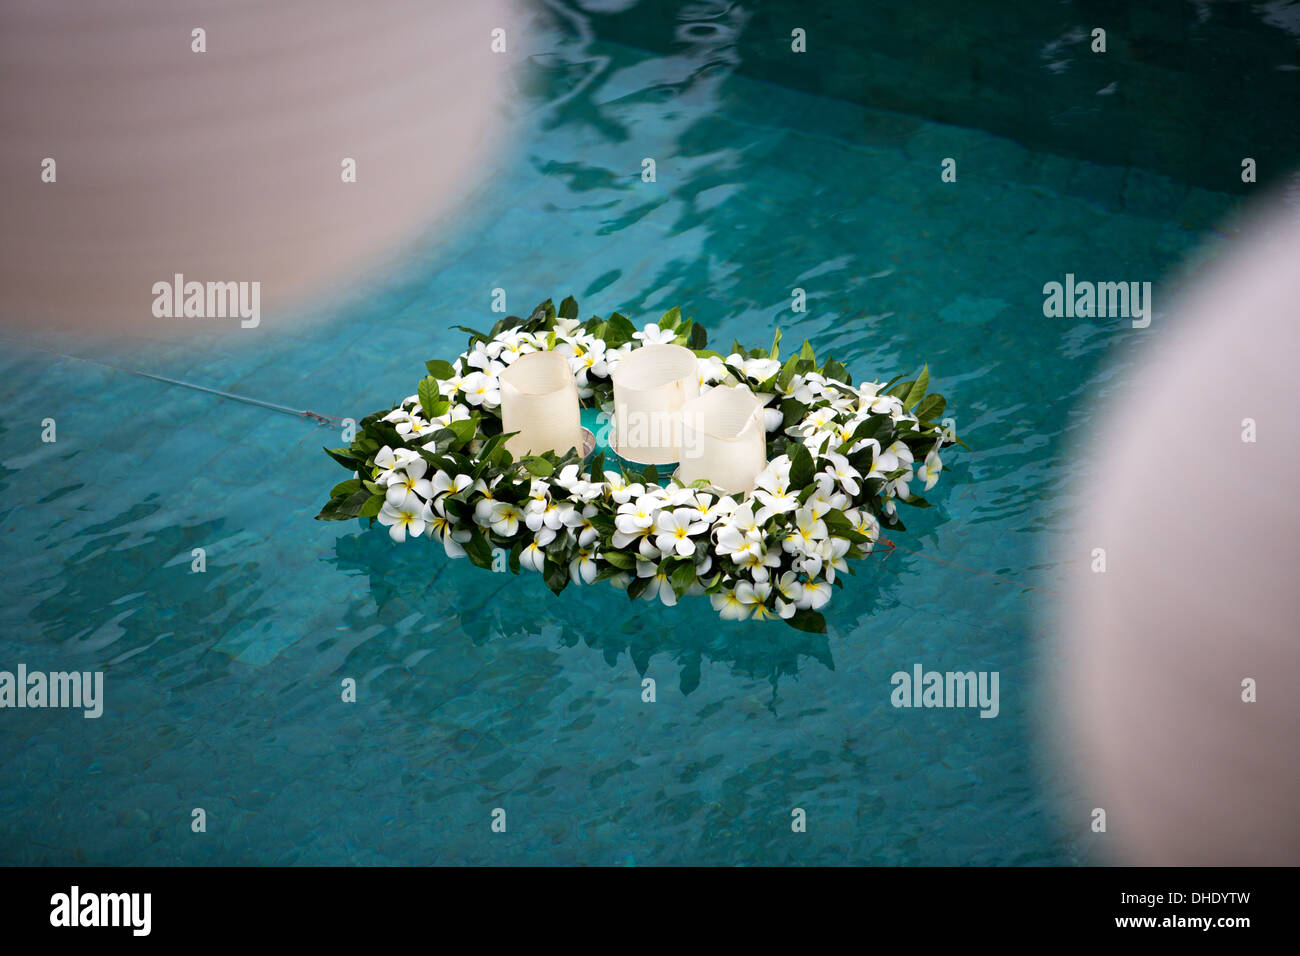 Schwimmende Kerze Dekoration Blumen Pool Dekor dekorative Wasser blau weißen Hochzeitsfeier ziehen Ehe drei fun-Design Stockfoto